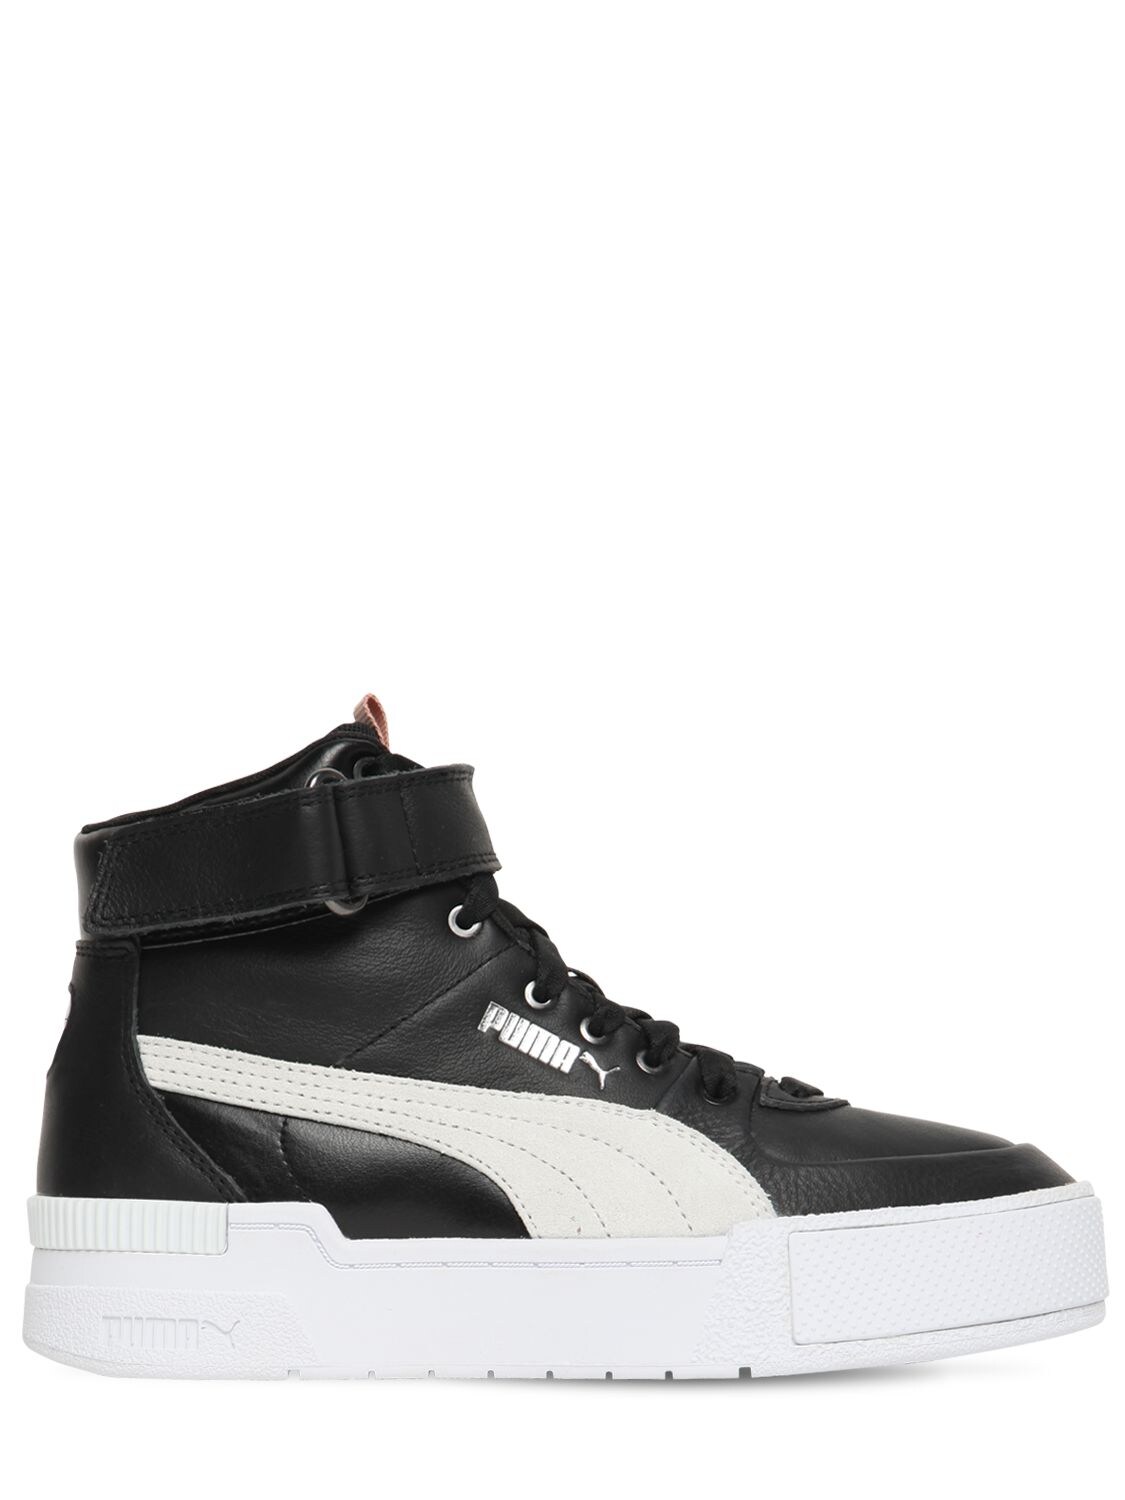 Puma Cali Sport High Top Sneakers In Black,white